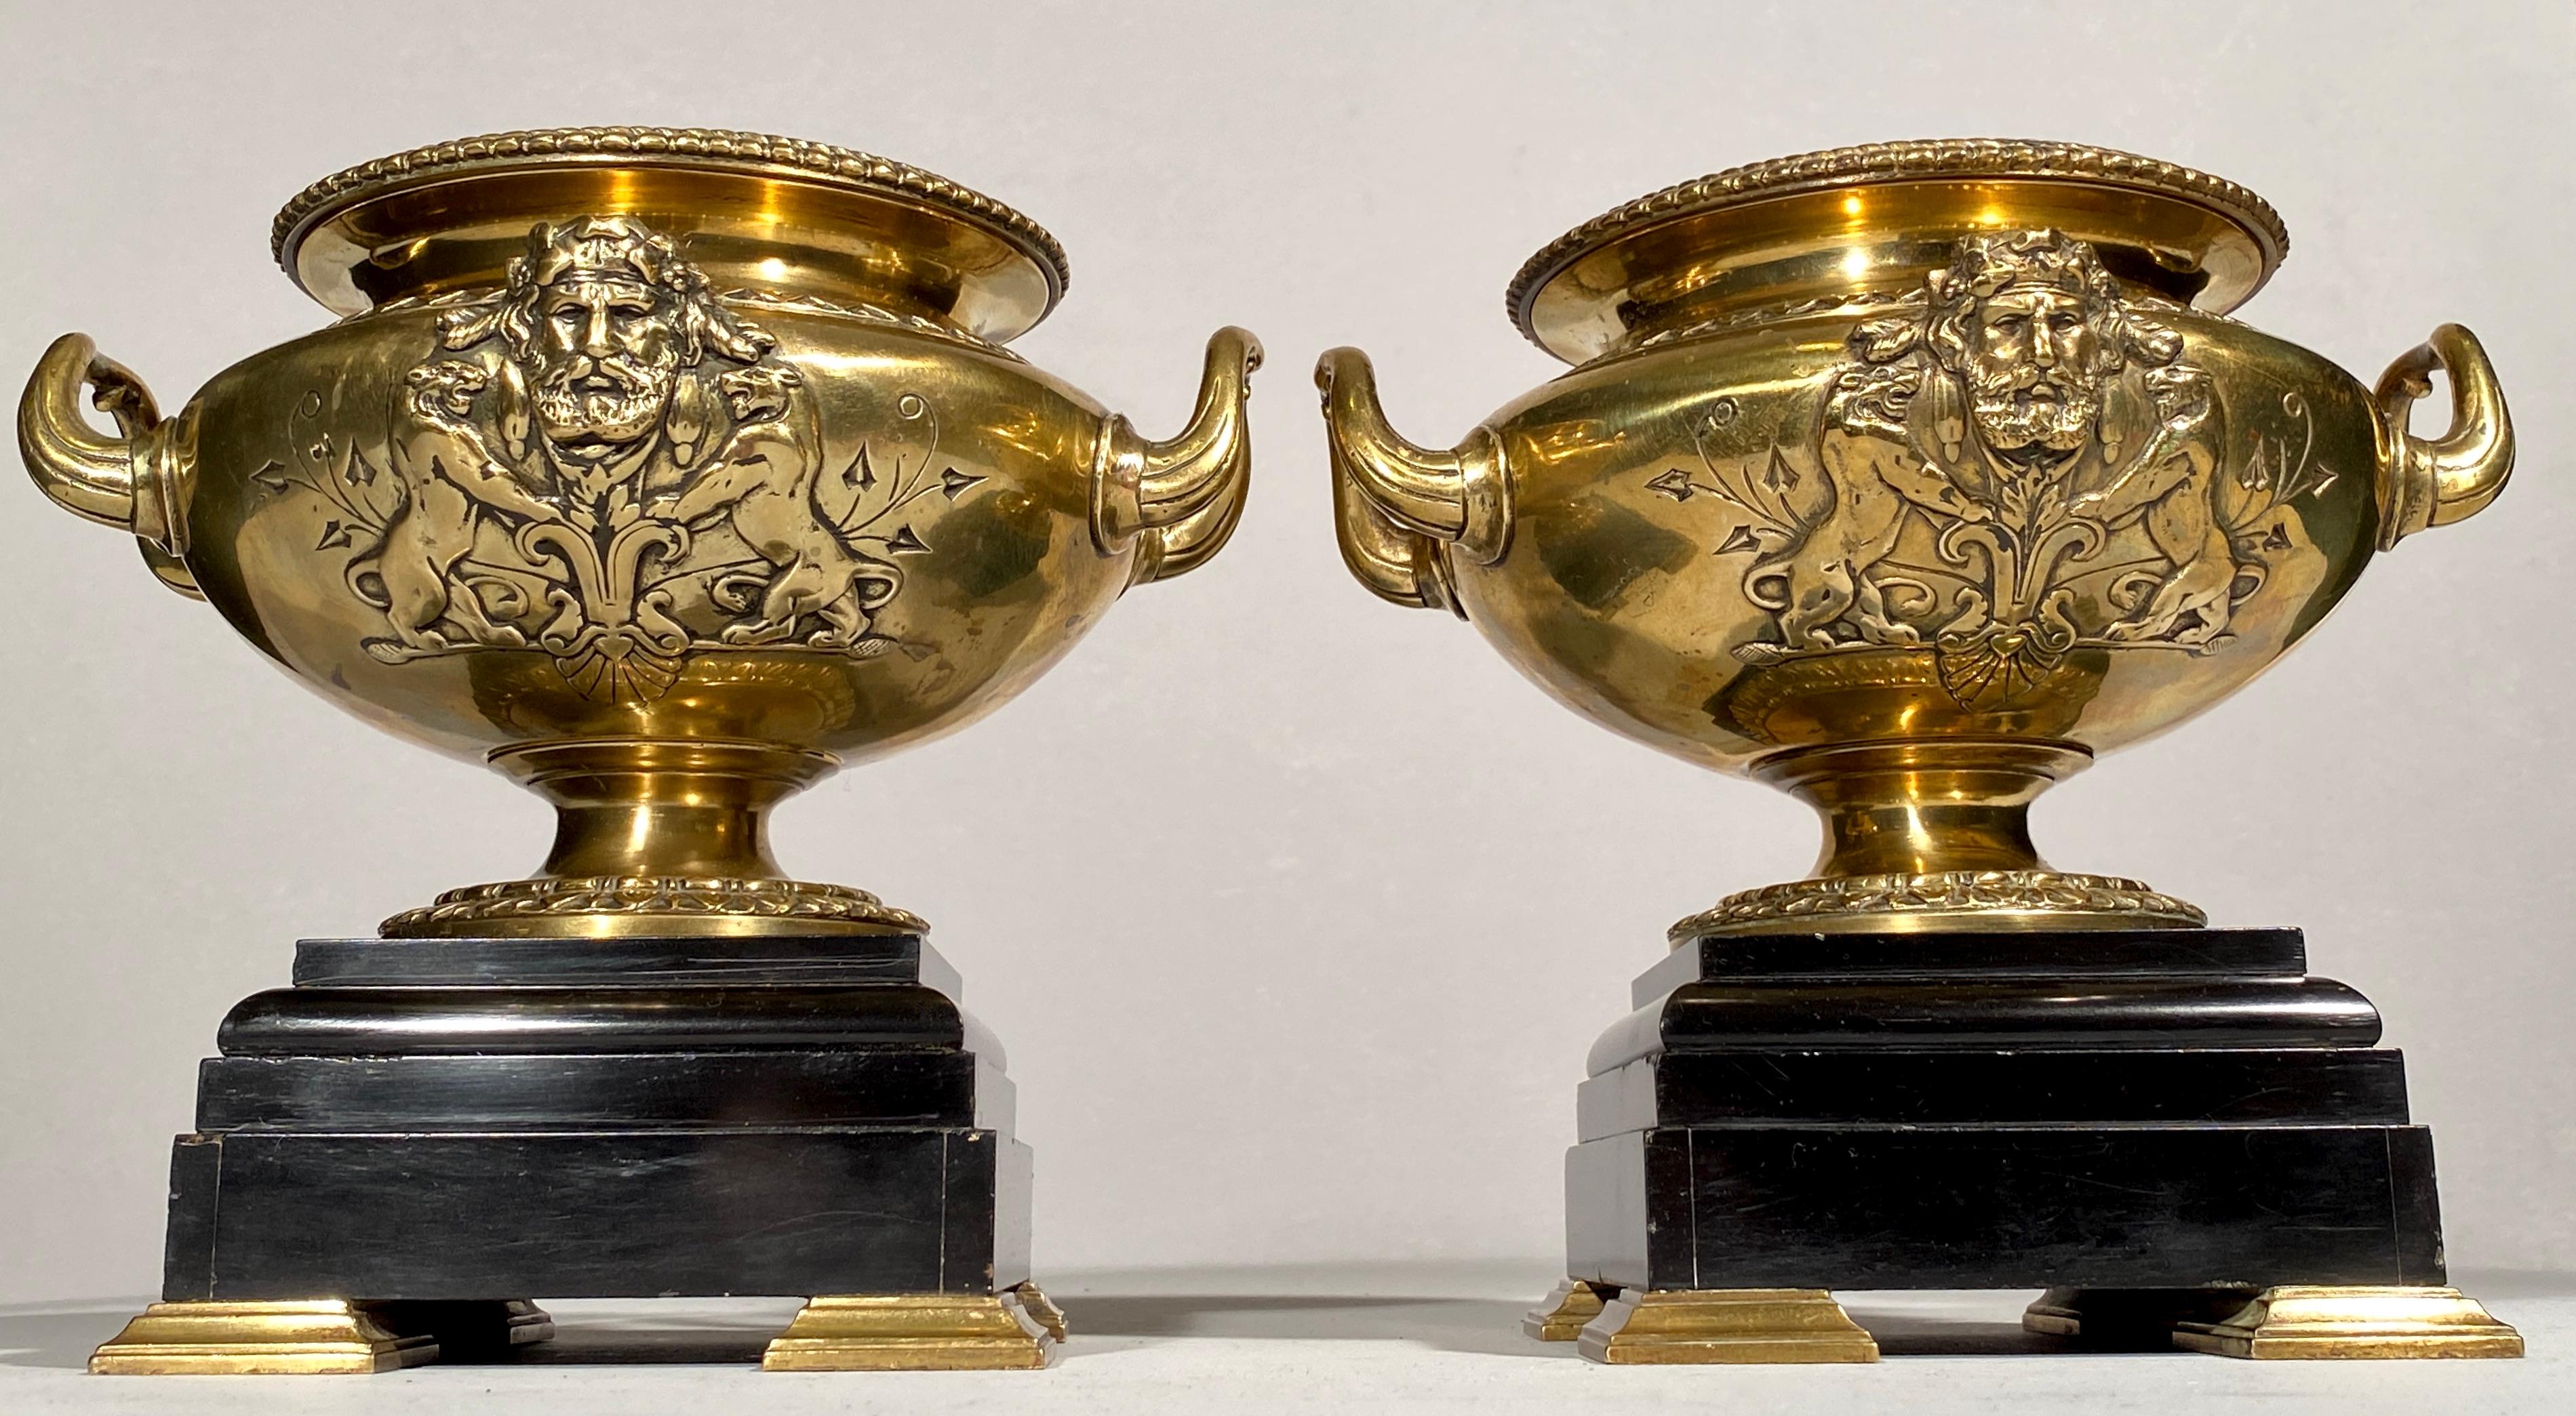 Paire de vases urnes en bronze du 19ème siècle français sur base en marbre noir. Les poignées sont en forme et reposent sur un socle à gradins en marbre noir, avec un moulage d'un dieu grec sur les deux côtés, avec des lions en miroir et des détails